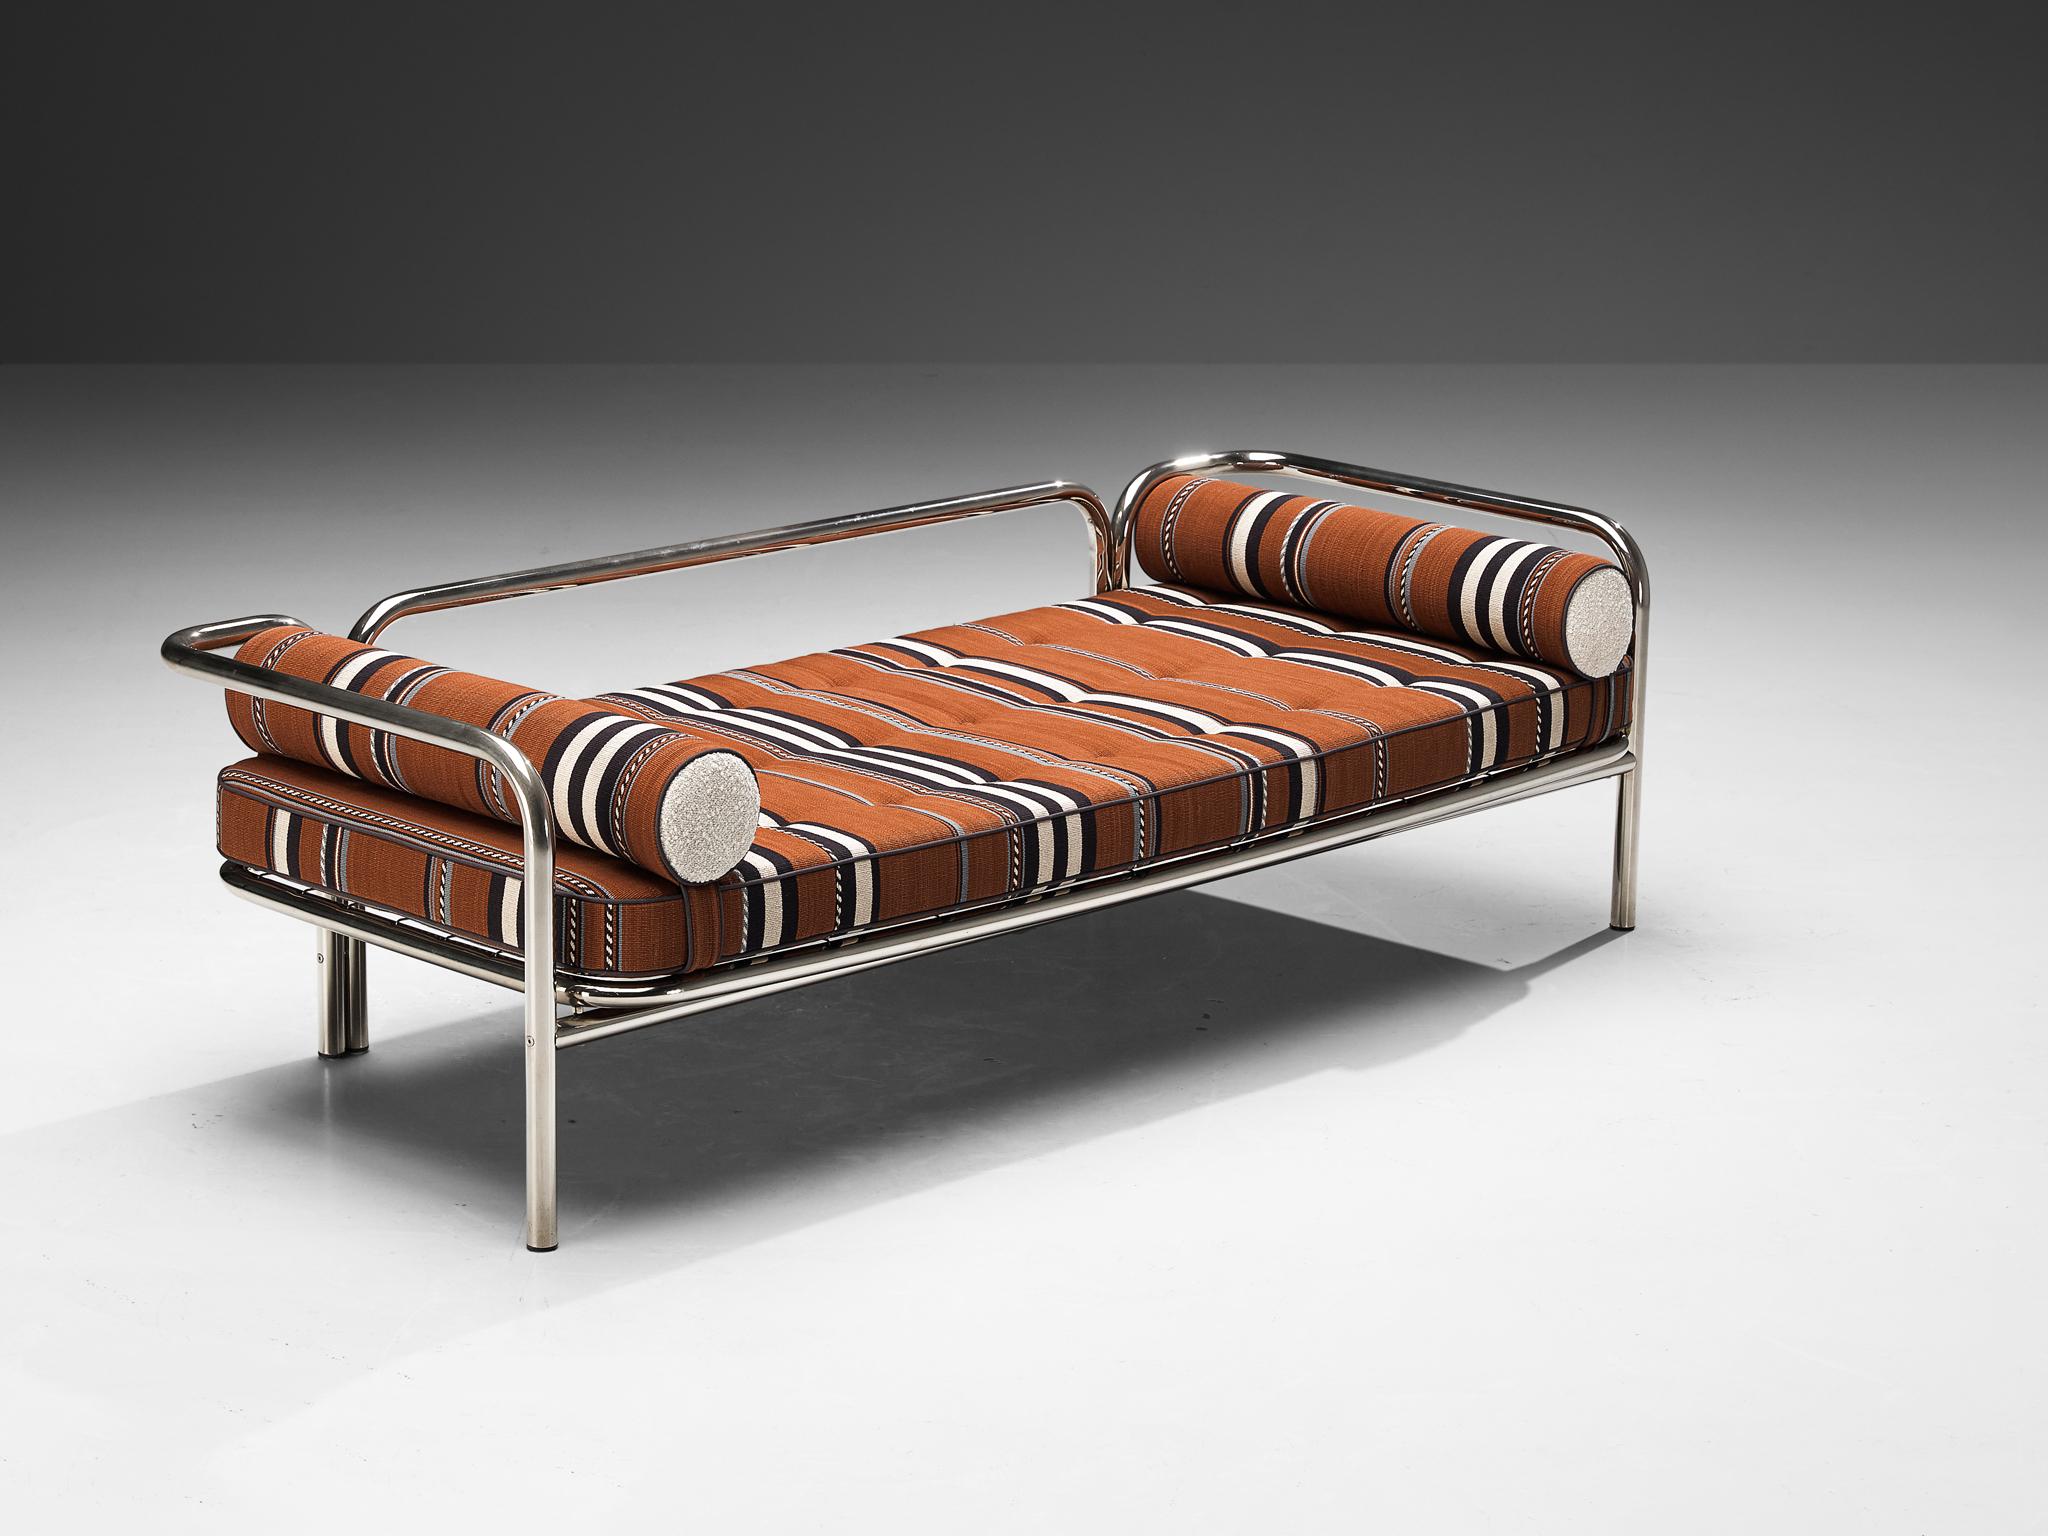 Gae Aulenti pour Poltronova Production, modèle de lit de jour 'Locus Solus', acier chromé, tissu Larsen, Italie, 1964 

Ce lit de jour de Gae Aulenti fait partie de la série 